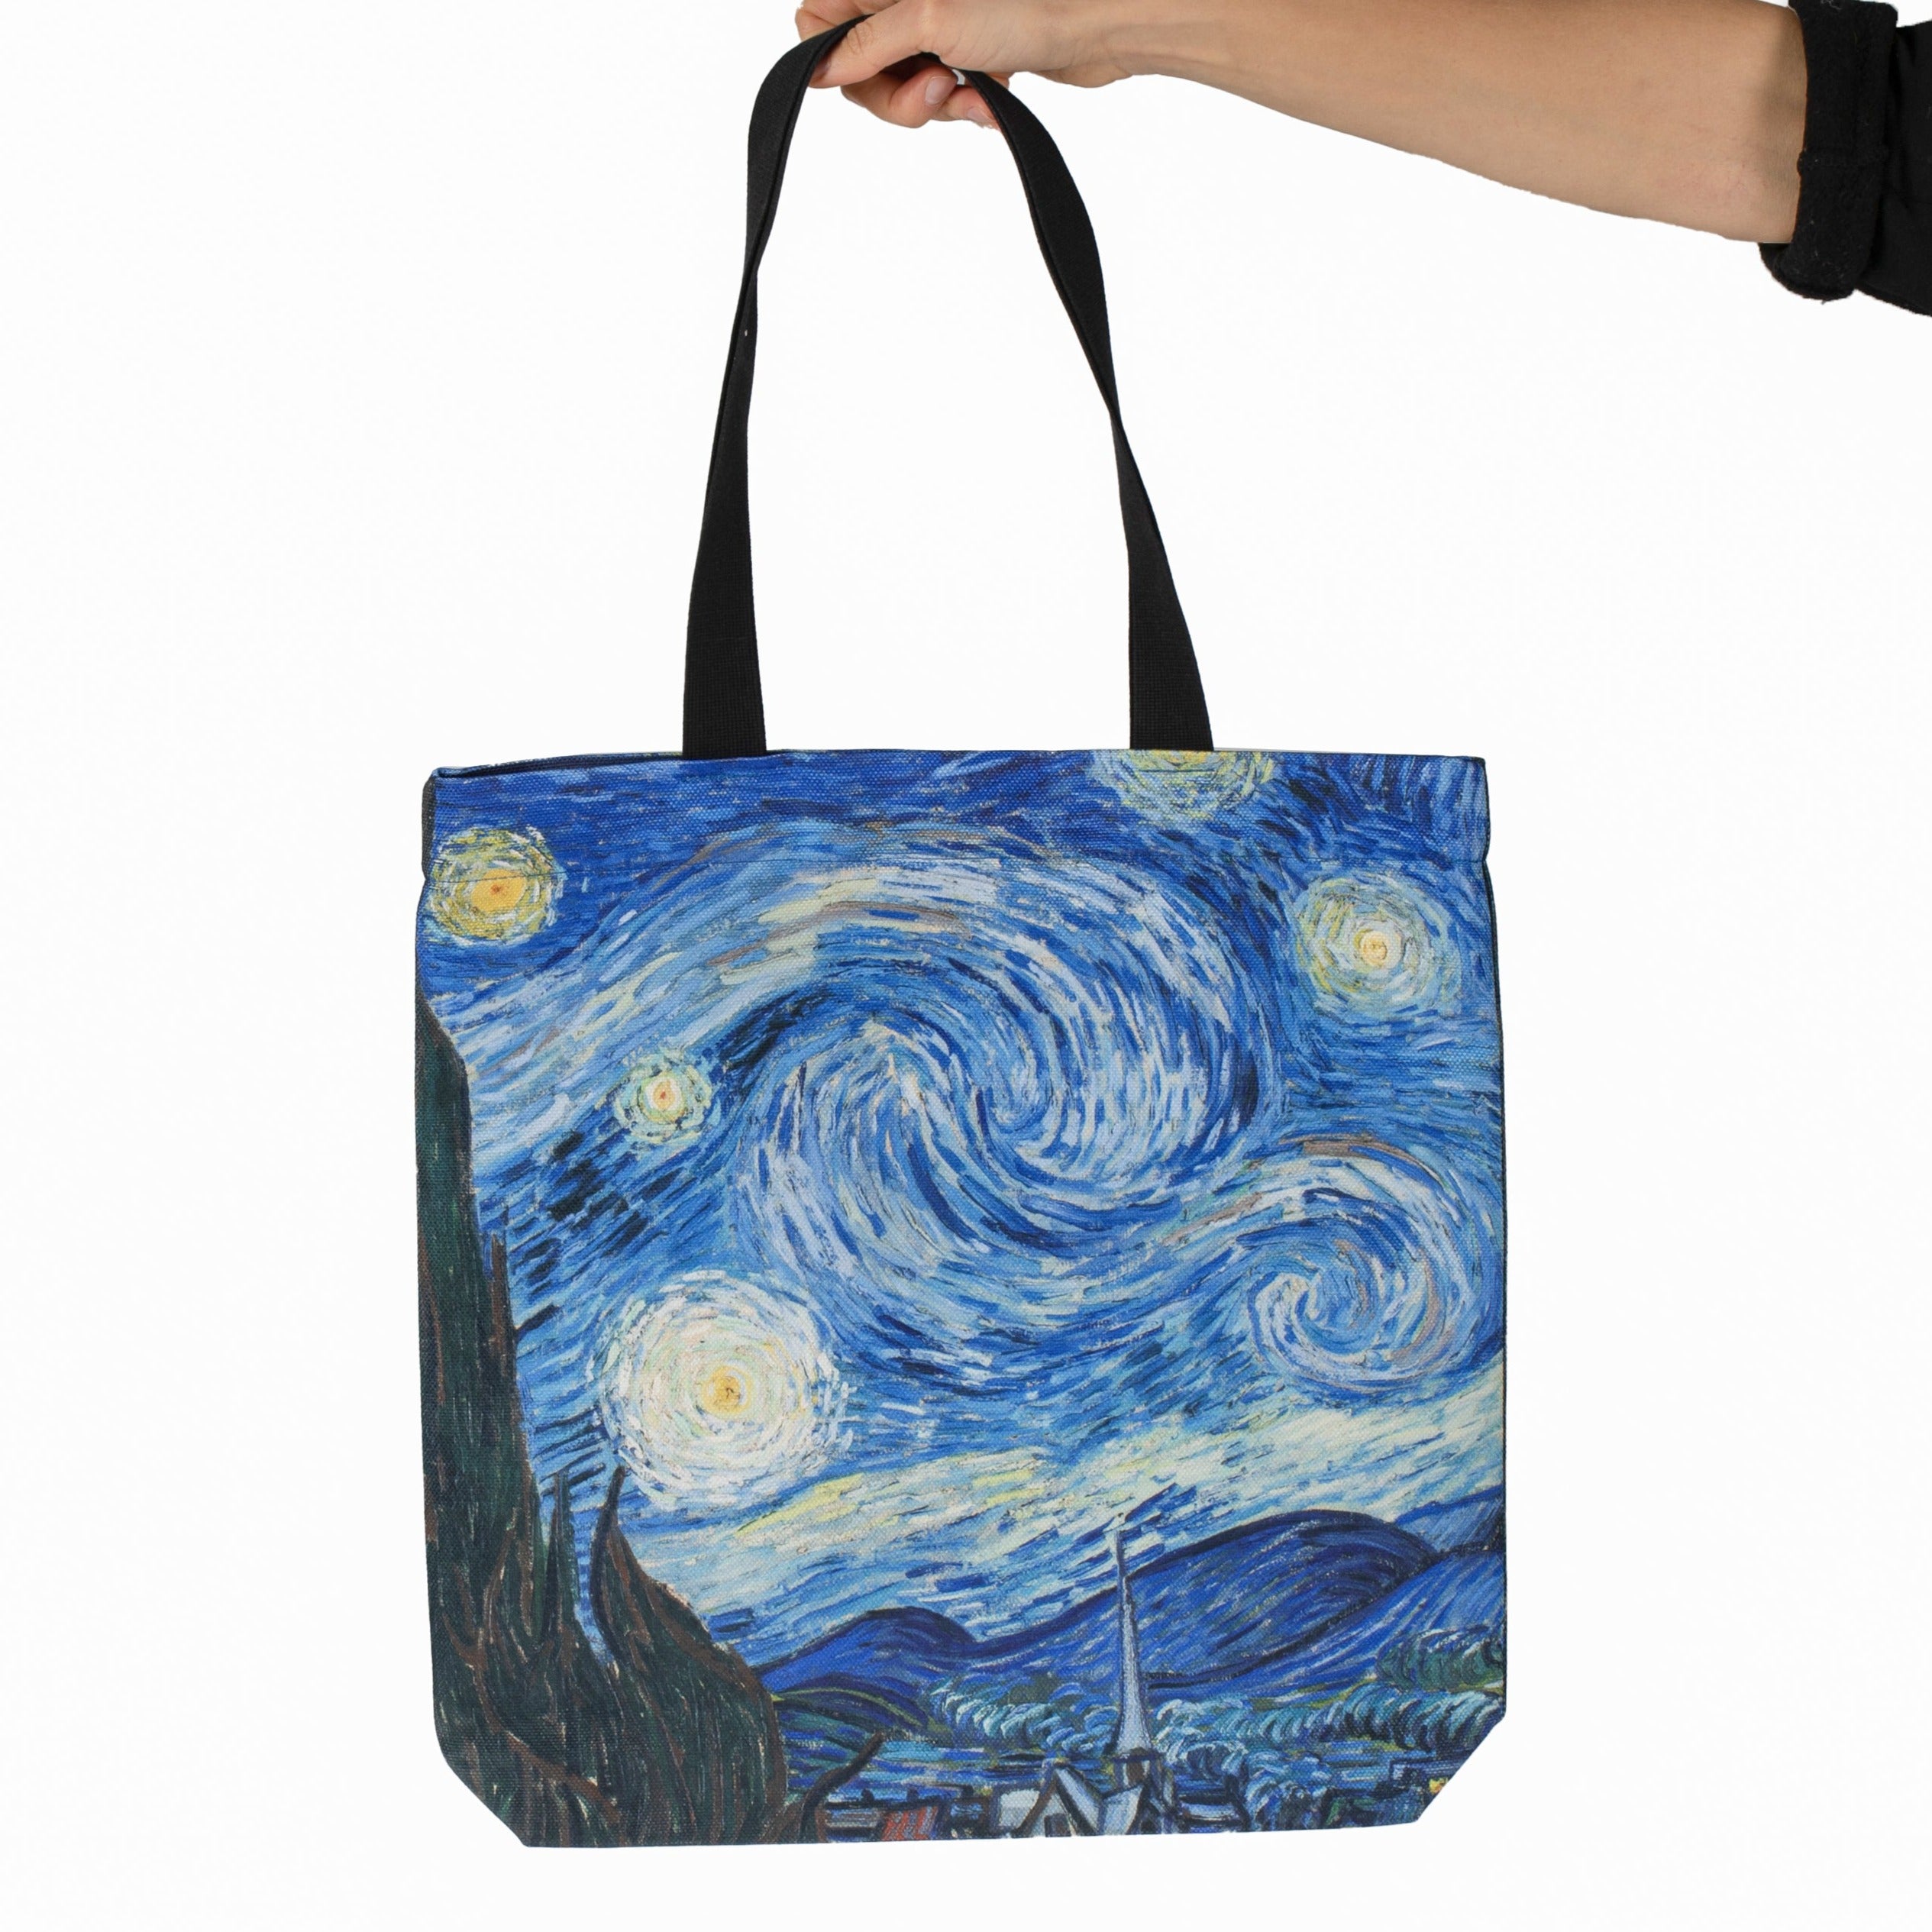 Shopping bag Vincent van Gogh "Starry Night"